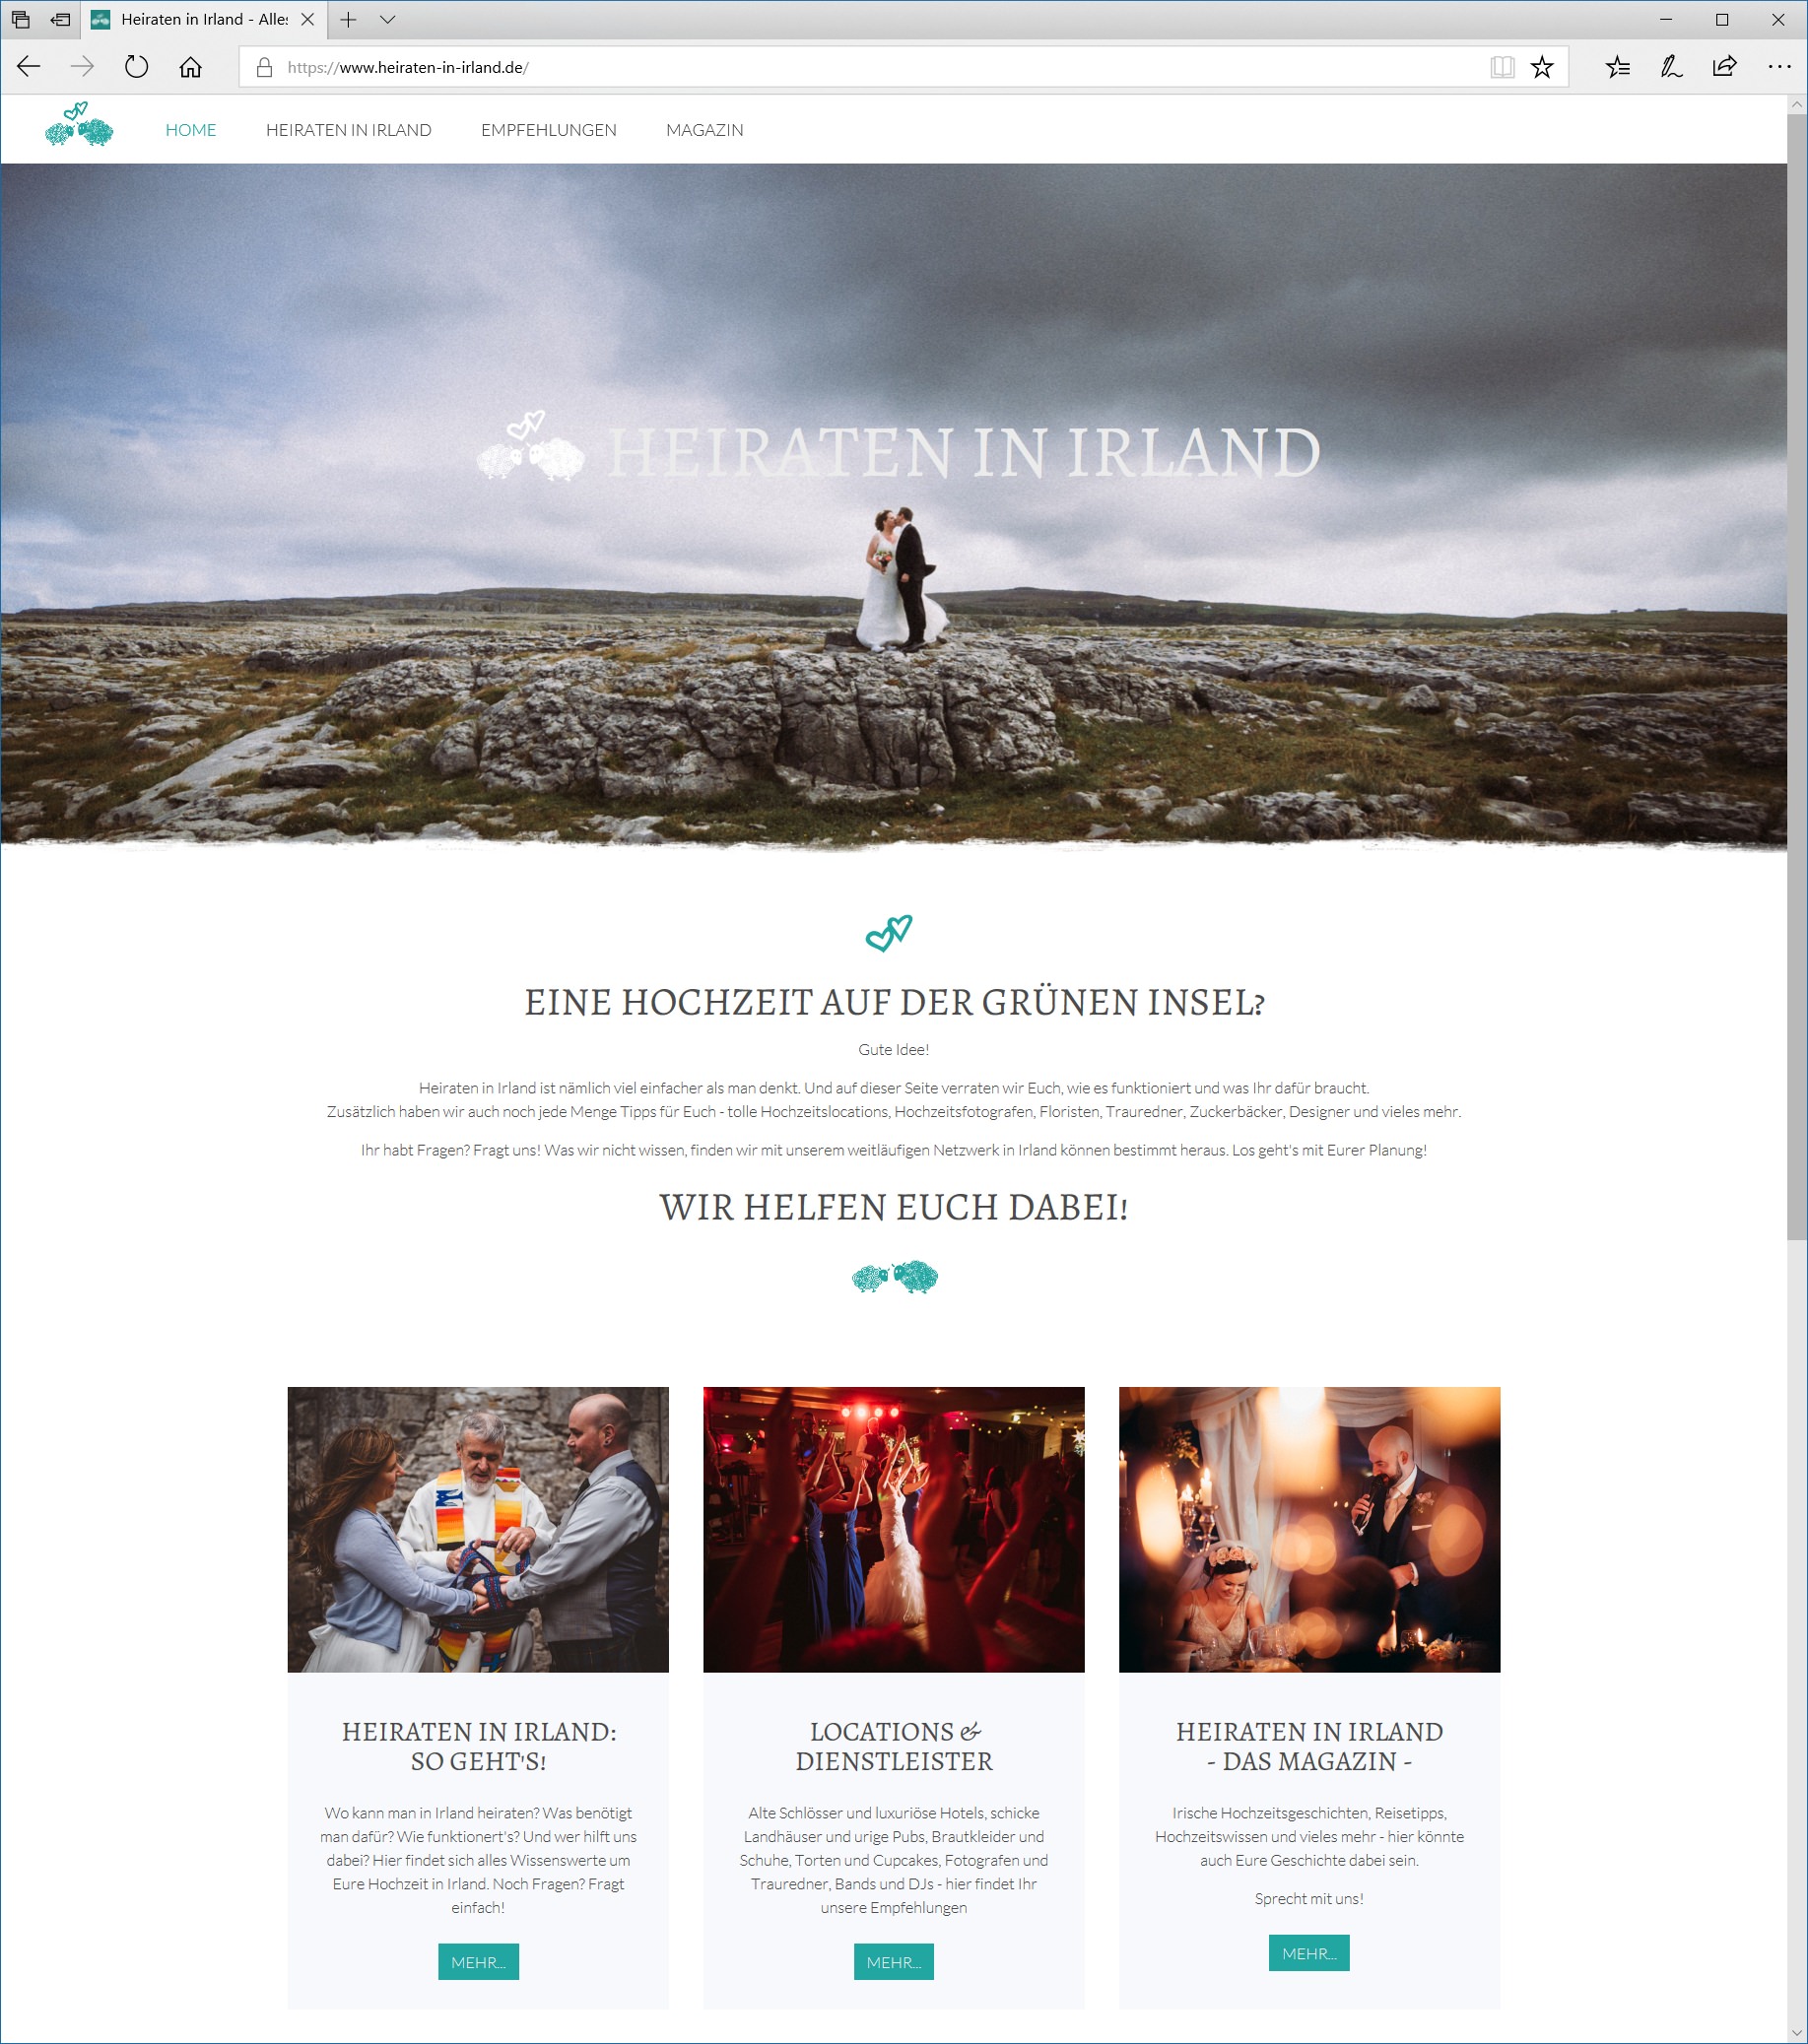 heiraten-in-irland.de - das Webportal mit allen Infos rund um Hochzeit in Irland